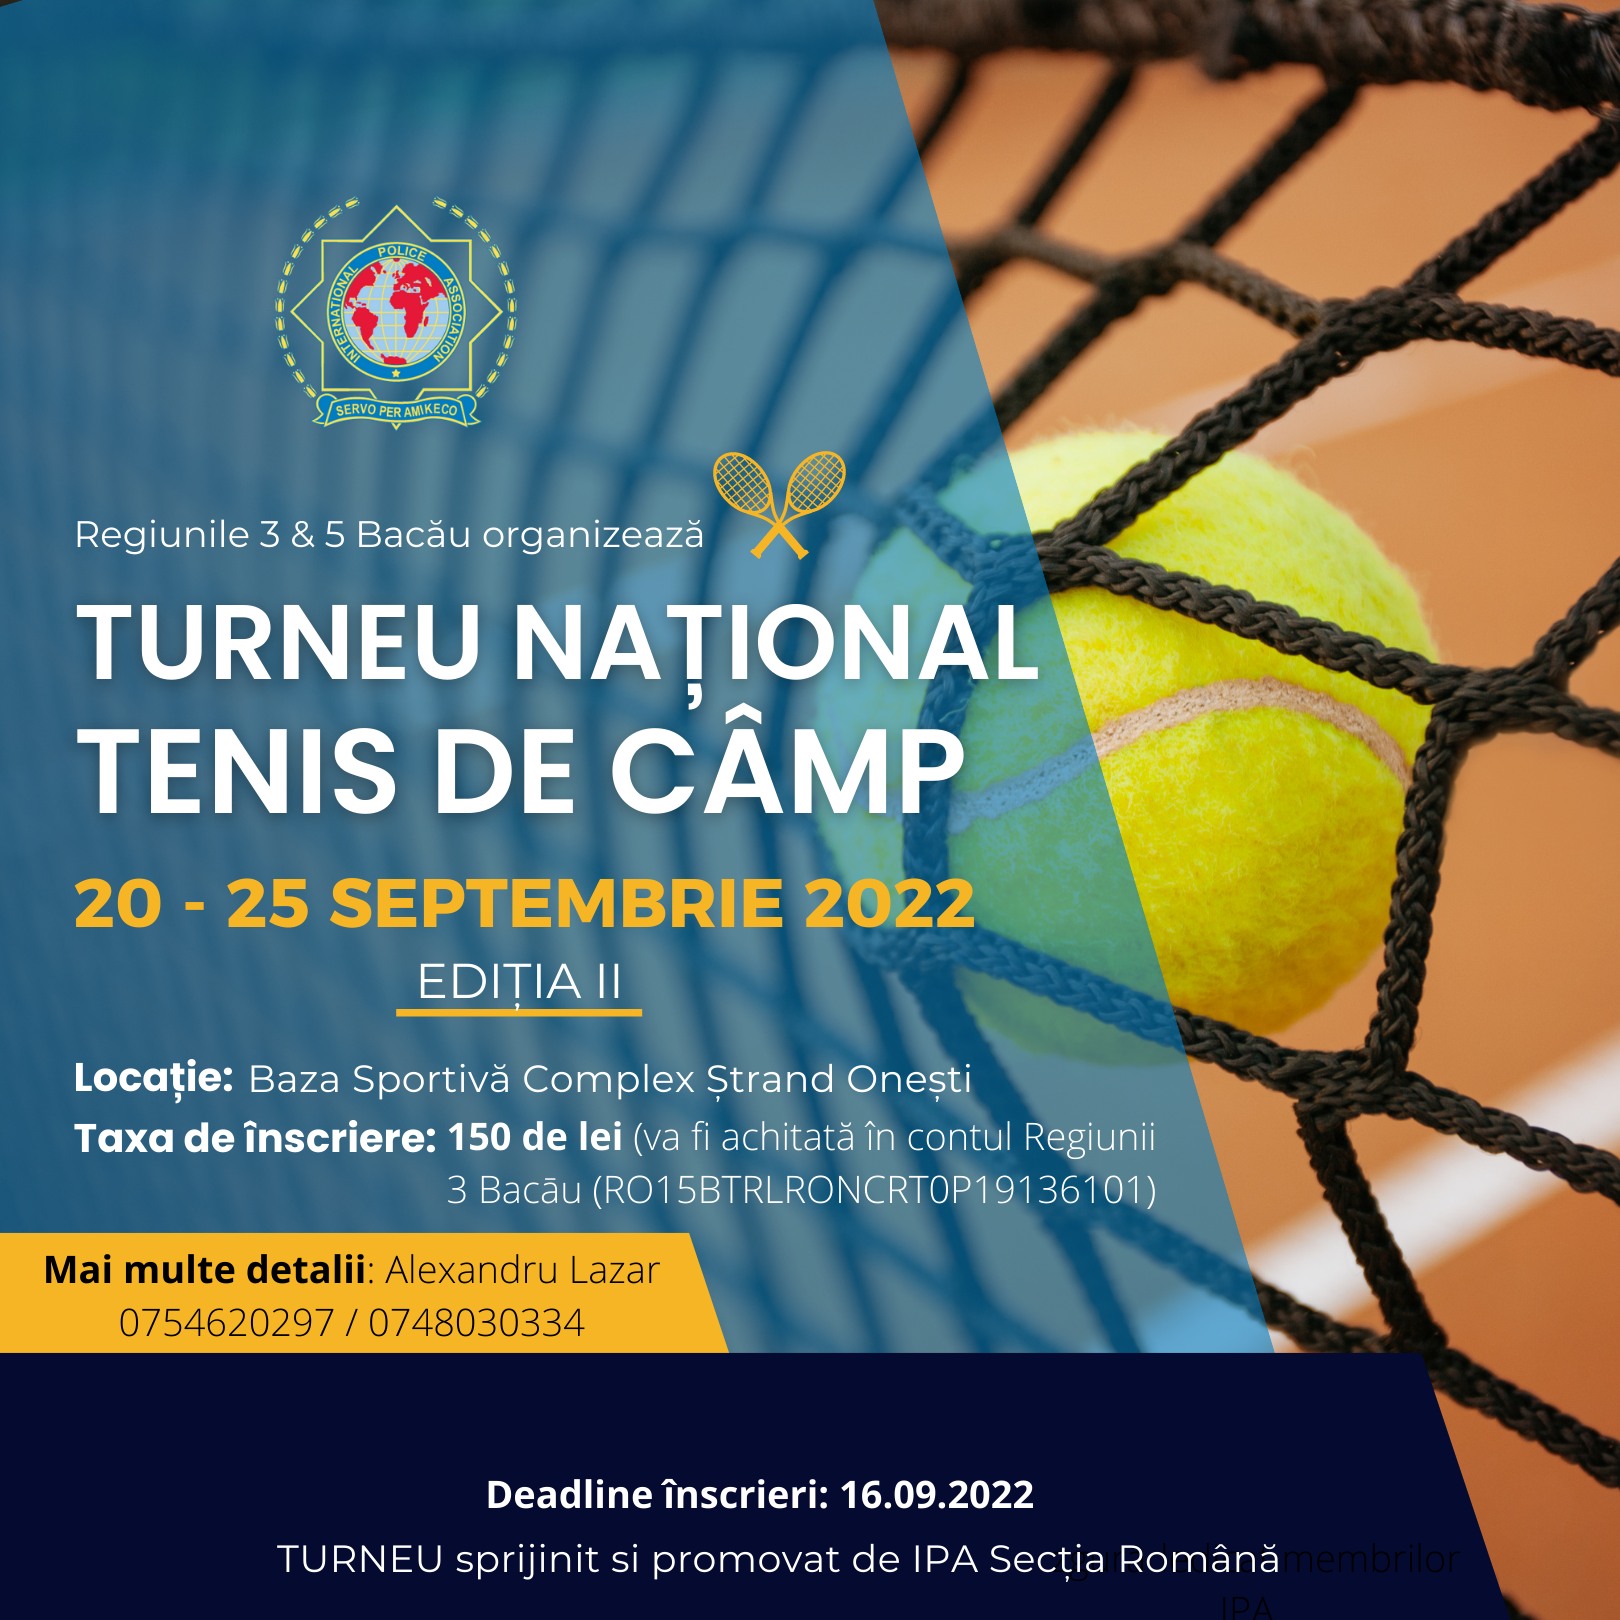 Turneu Național de Tenis de Câmp, organizat de Regiunile IPA 3&5 Bacău!